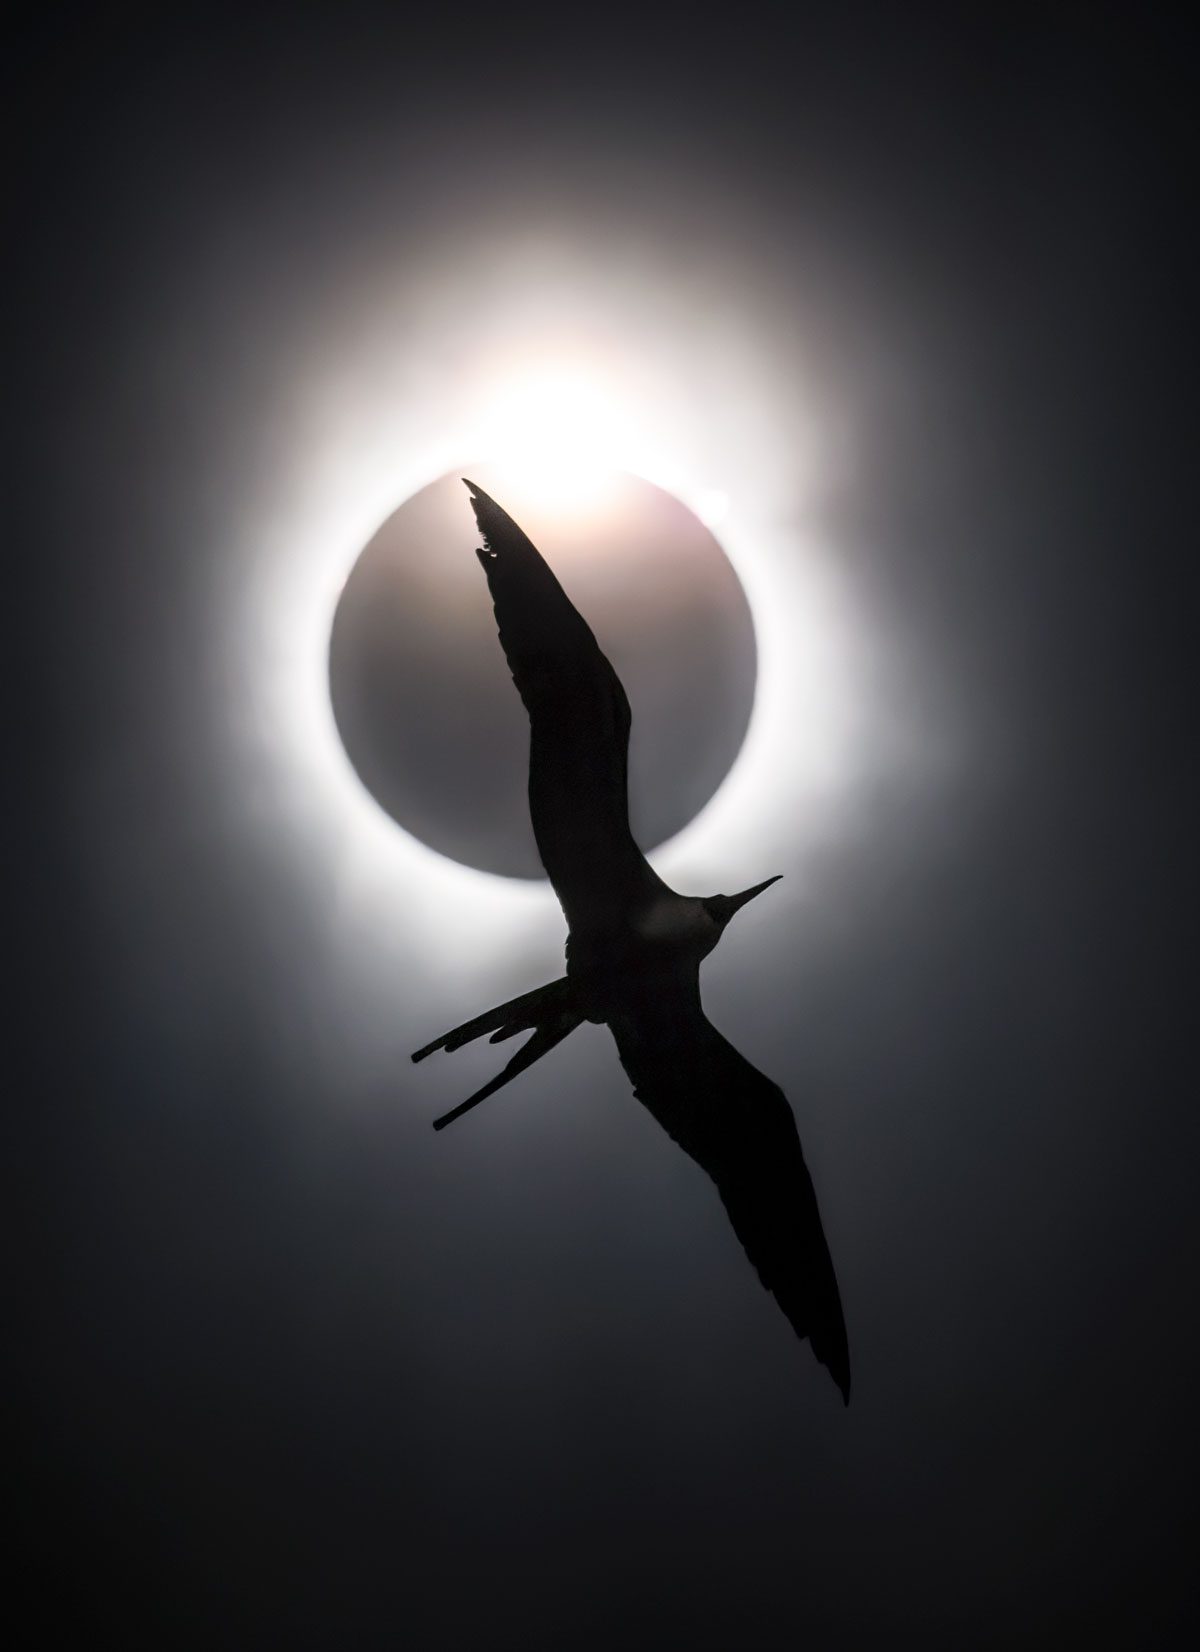 Fotografía en blanco y negro de un eclipse solar con un pájaro delgado, de alas largas y cola ahorquillada volando en silueta.